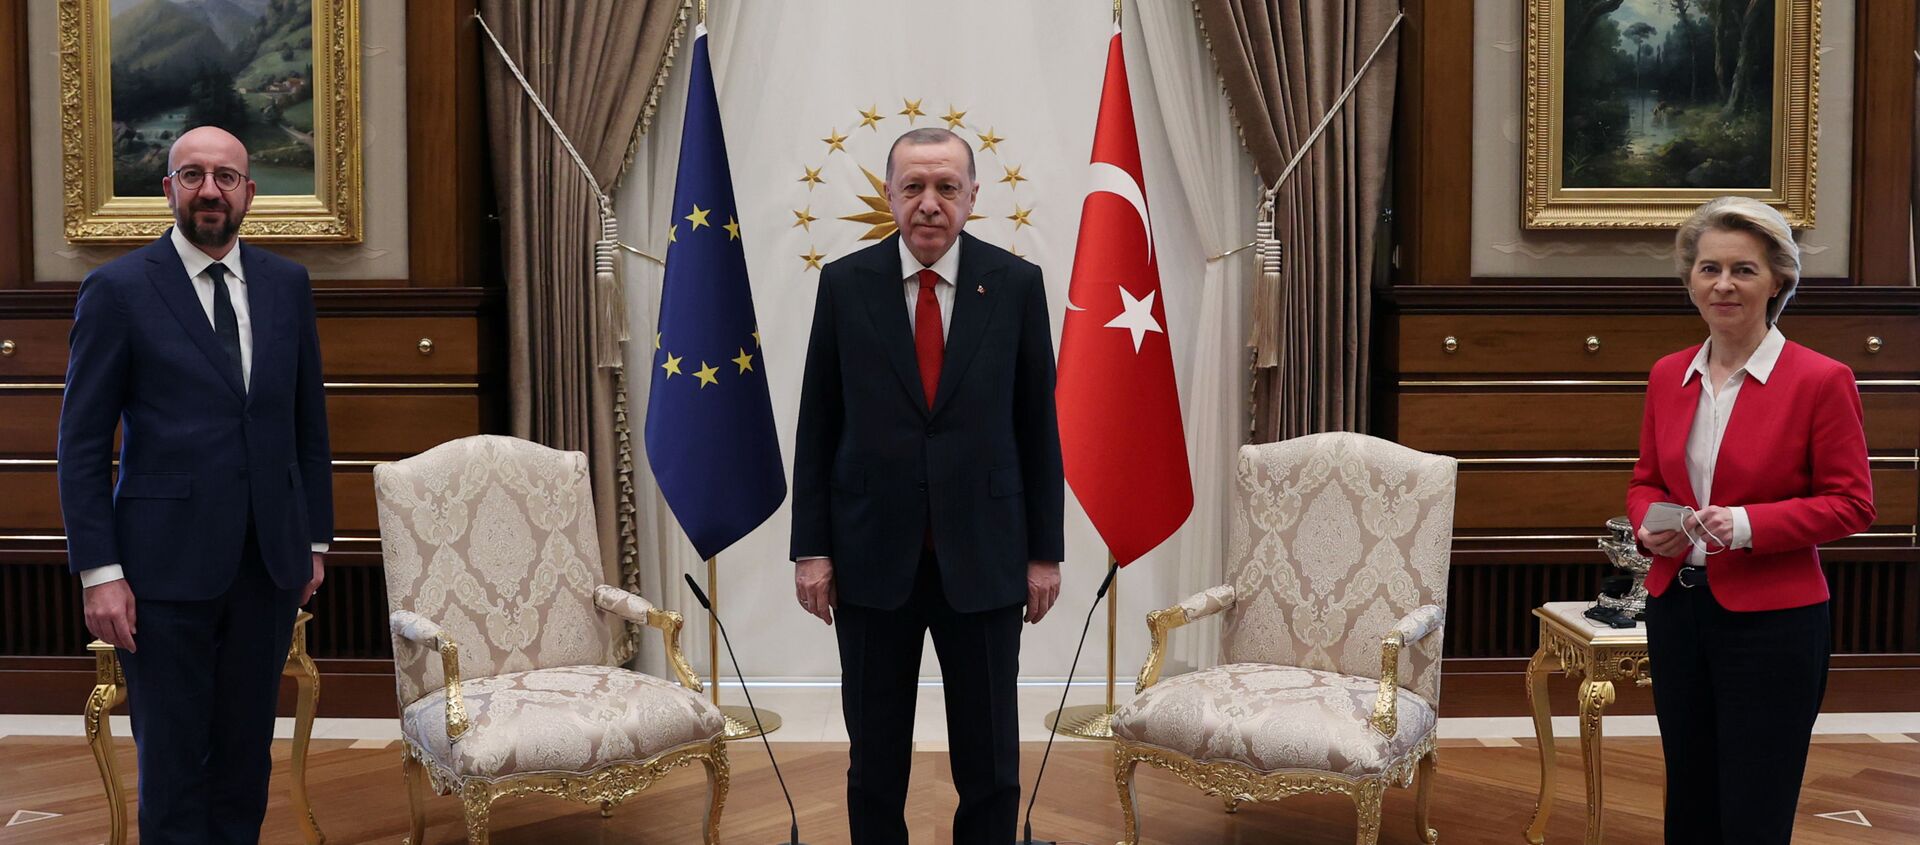 თურქეთის პრეზიდენტი რეჯეფ თაიიფ ერდოღანი, ევროსაბჭოს პრეზიდენტი შარლ მიშელი და ევროკომისიის პრეზიდენტი ურსულა ფონ დერ ლაიენი - Sputnik საქართველო, 1920, 07.04.2021